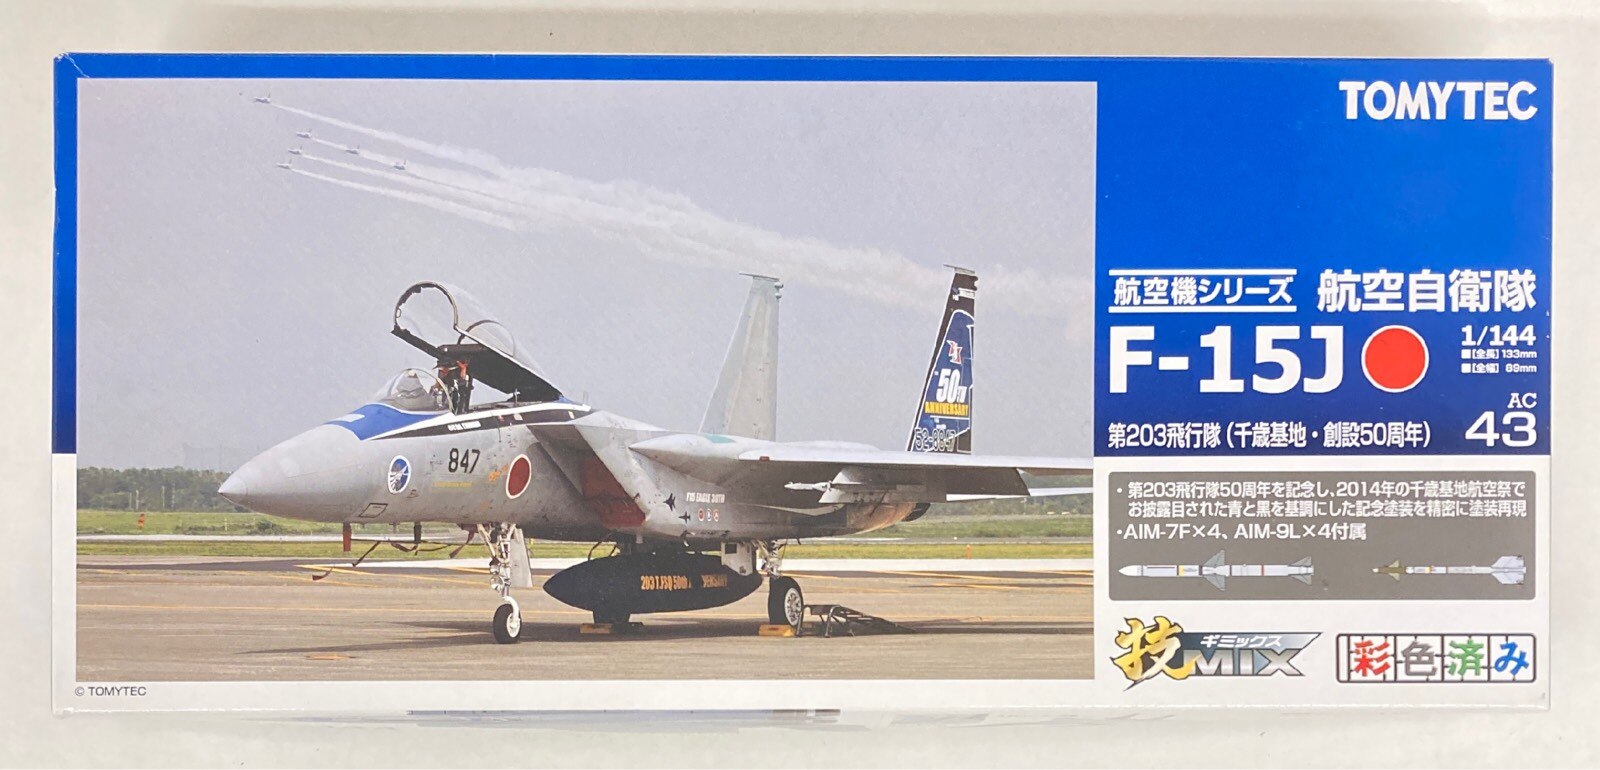 トミーテック 1/144 技MIX 航空機シリーズ 航空自衛隊 F-15J 第203飛行 